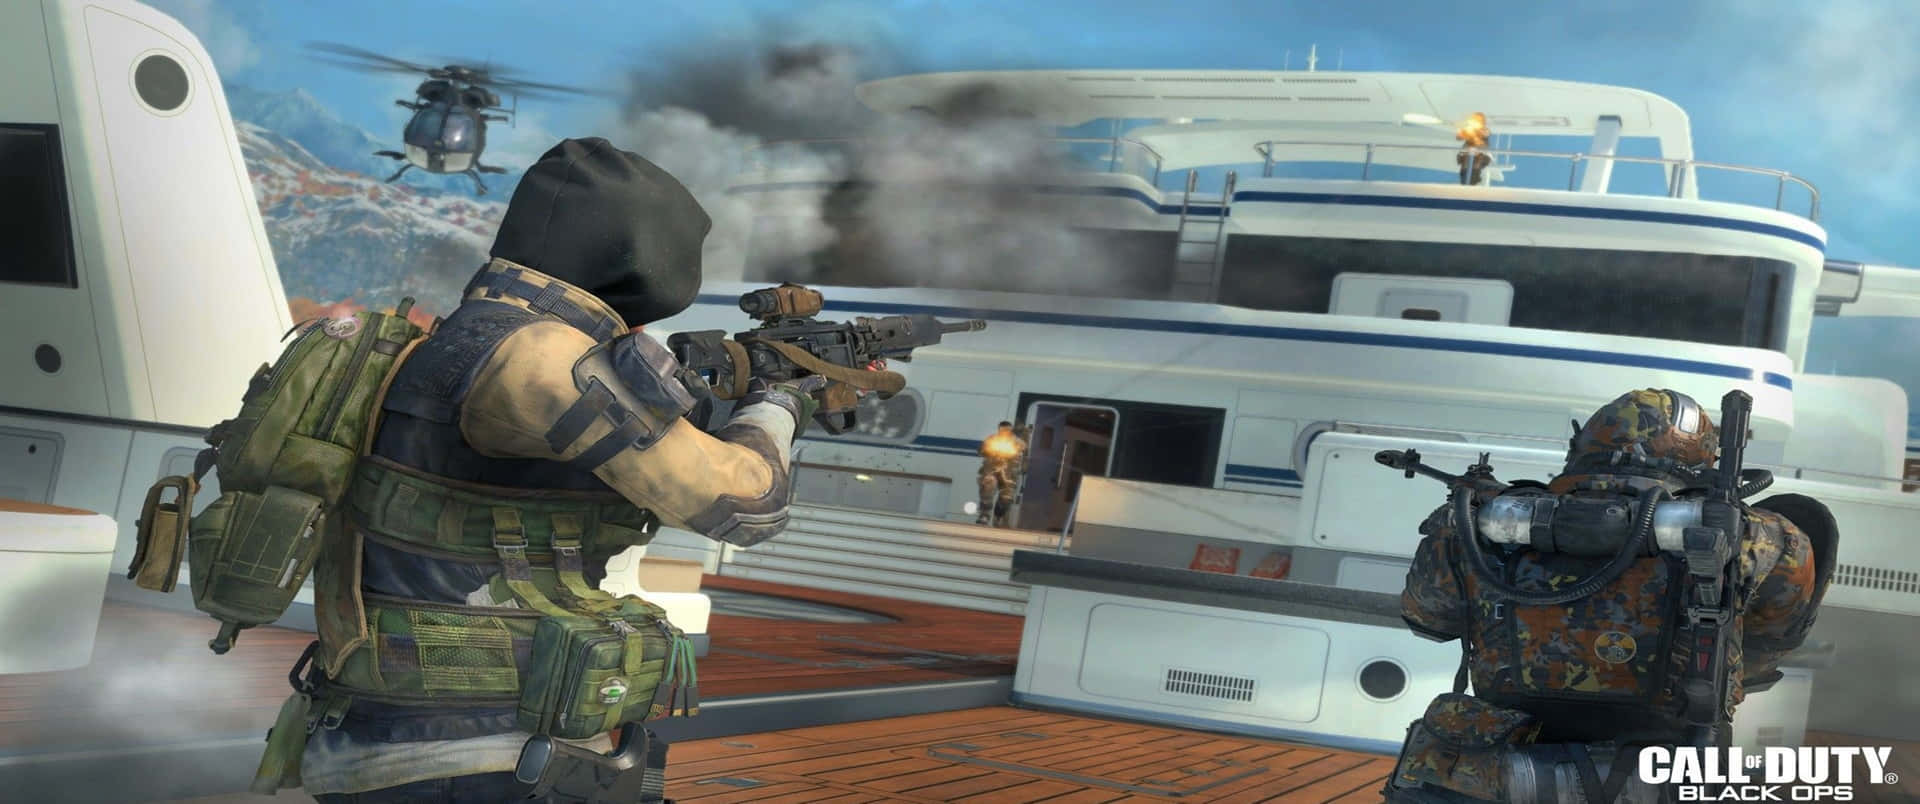 3440x1440phintergrund Von Call Of Duty Black Ops Cold War Hijacked